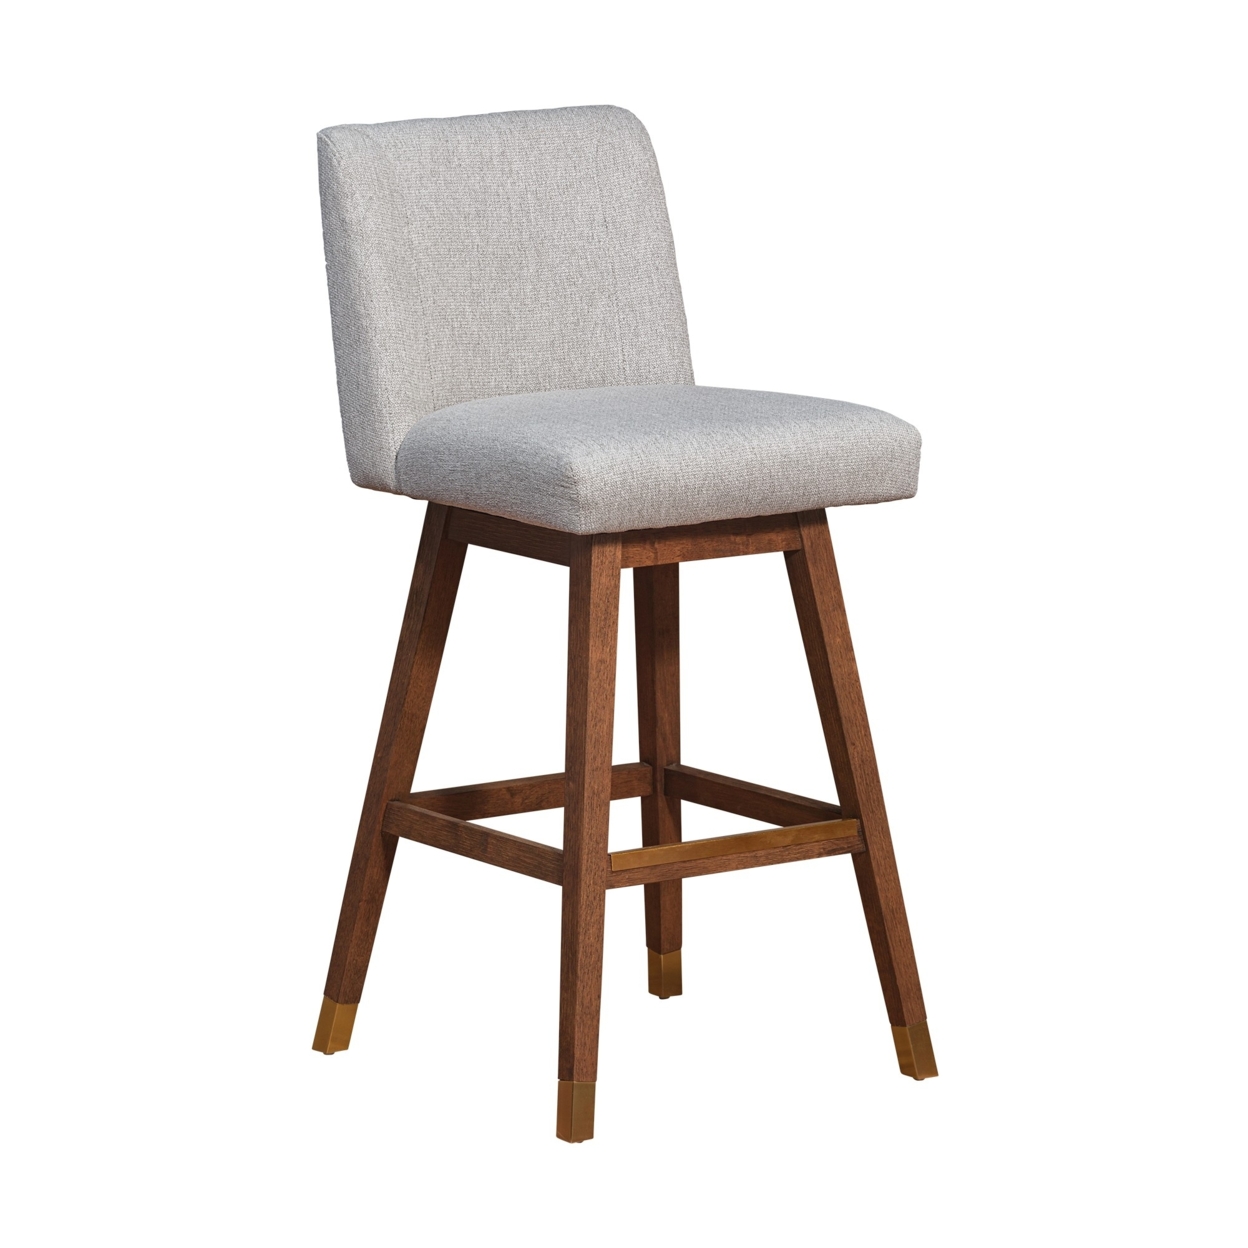 Lia 30 Swivel Barstool Chair, Brown Rubberwood Frame, Light Gray Polyester- Saltoro Sherpi